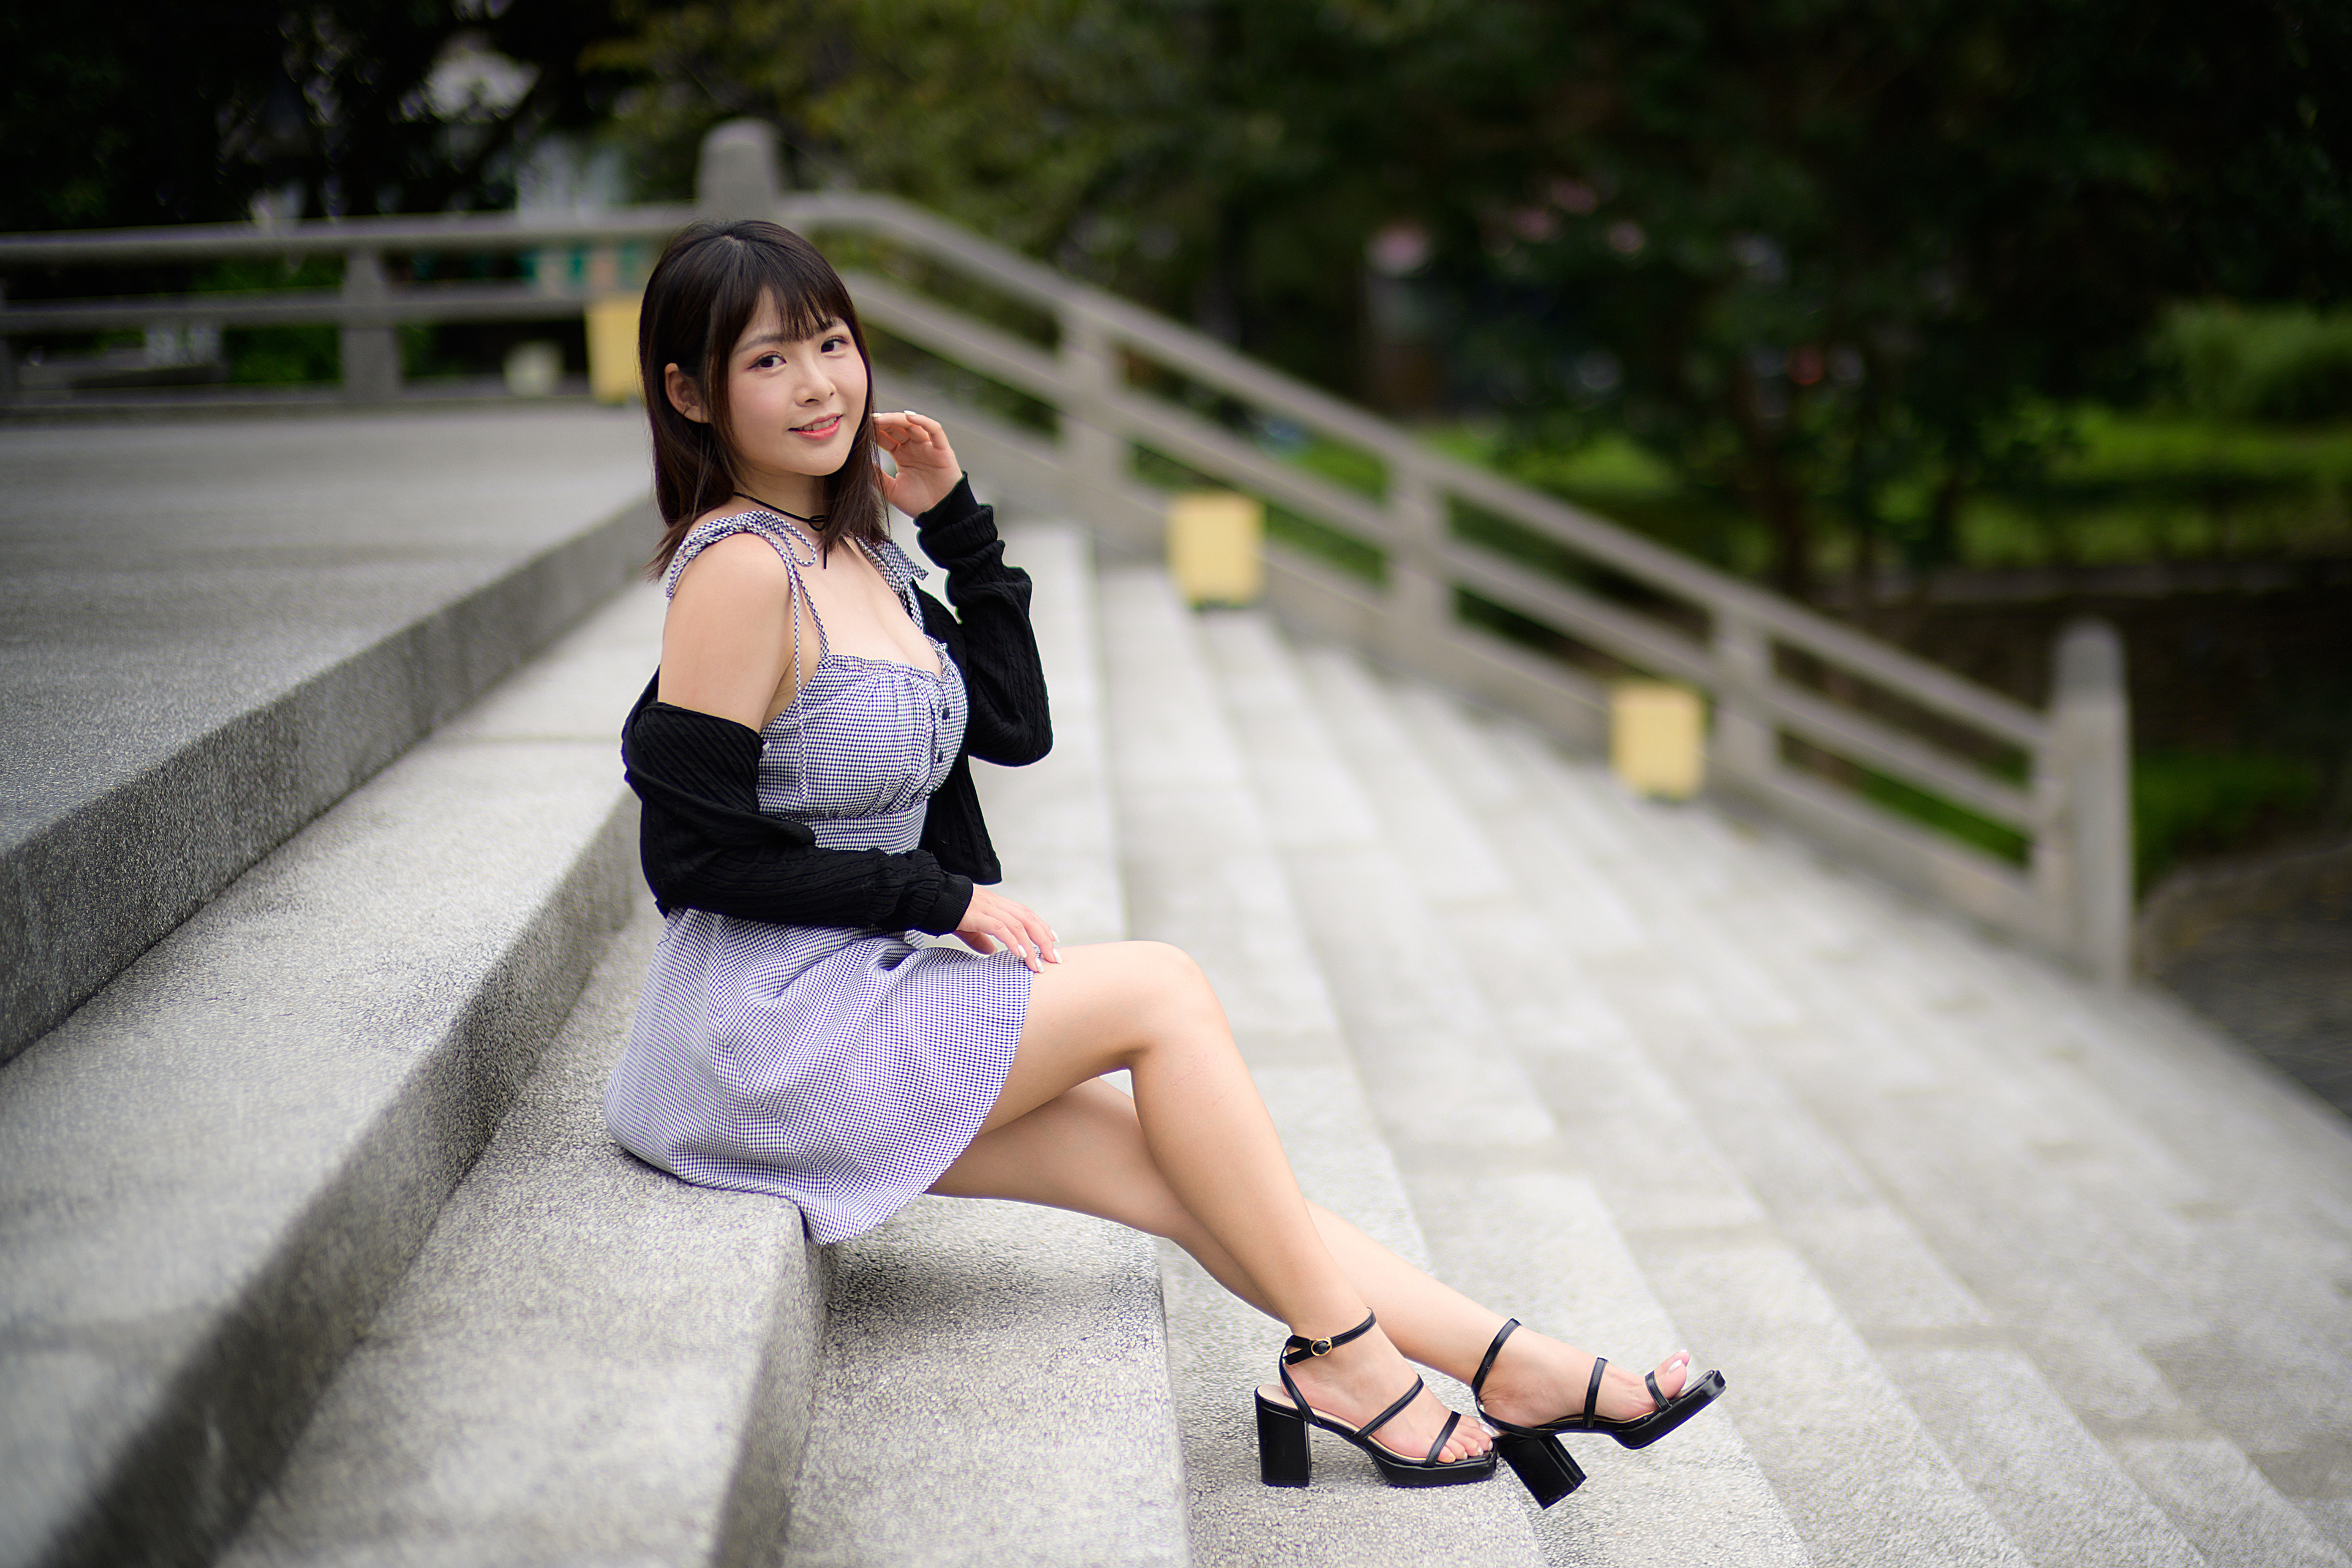 Asian Model Women Dark Hair Sitting Barefoot Sandal 3840x2560